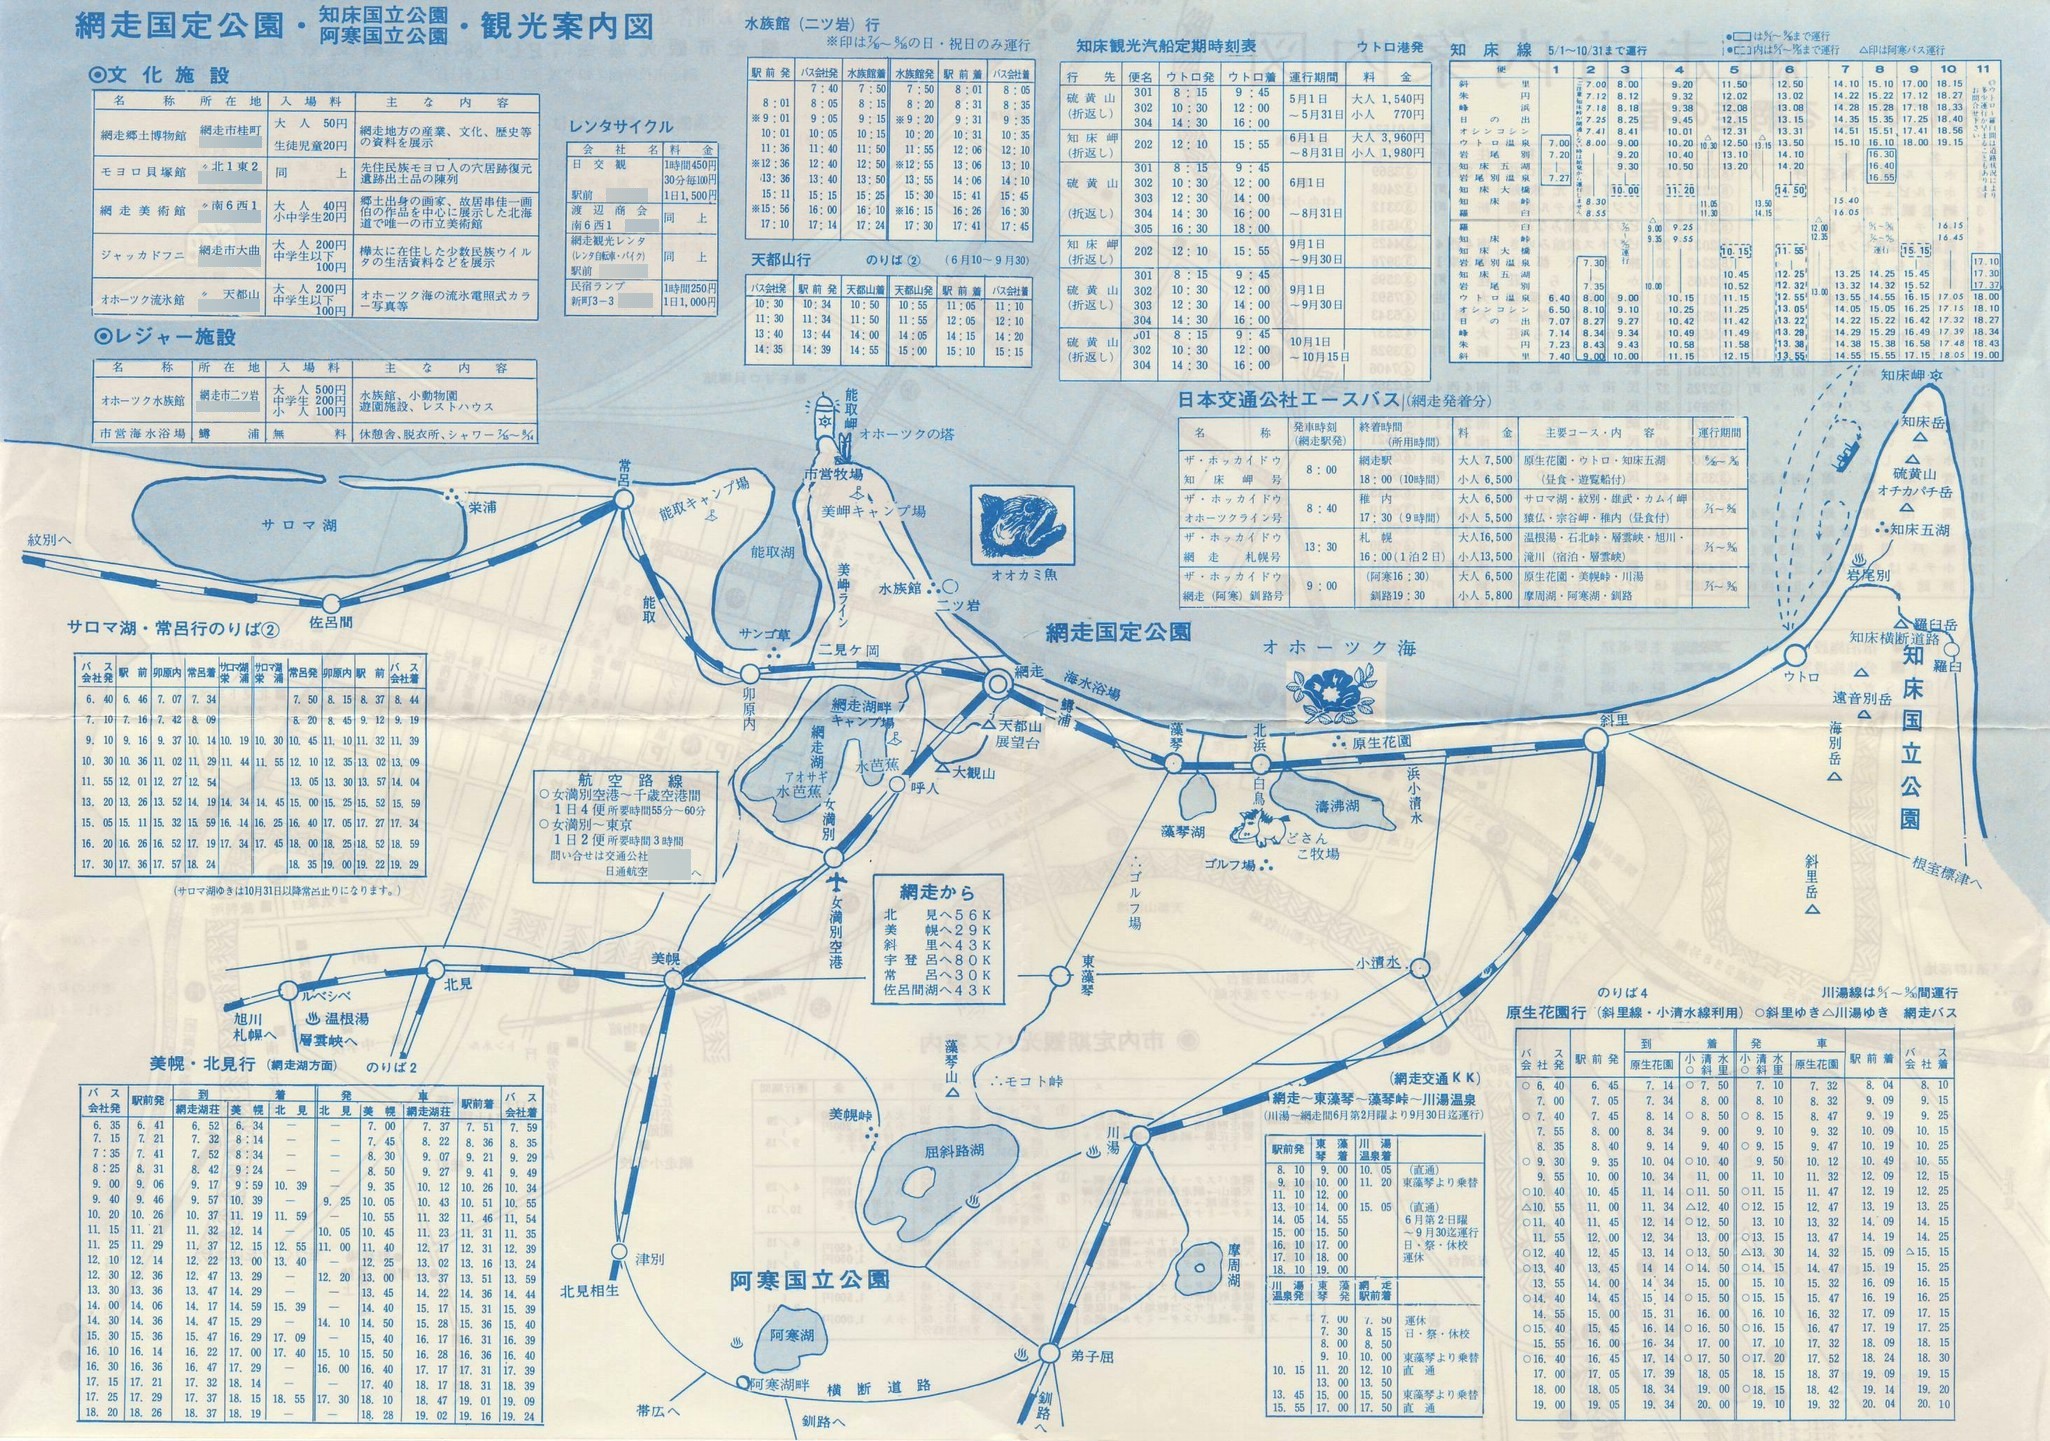 1982年(頃)_網走市観光協会_網走市内案内図裏面